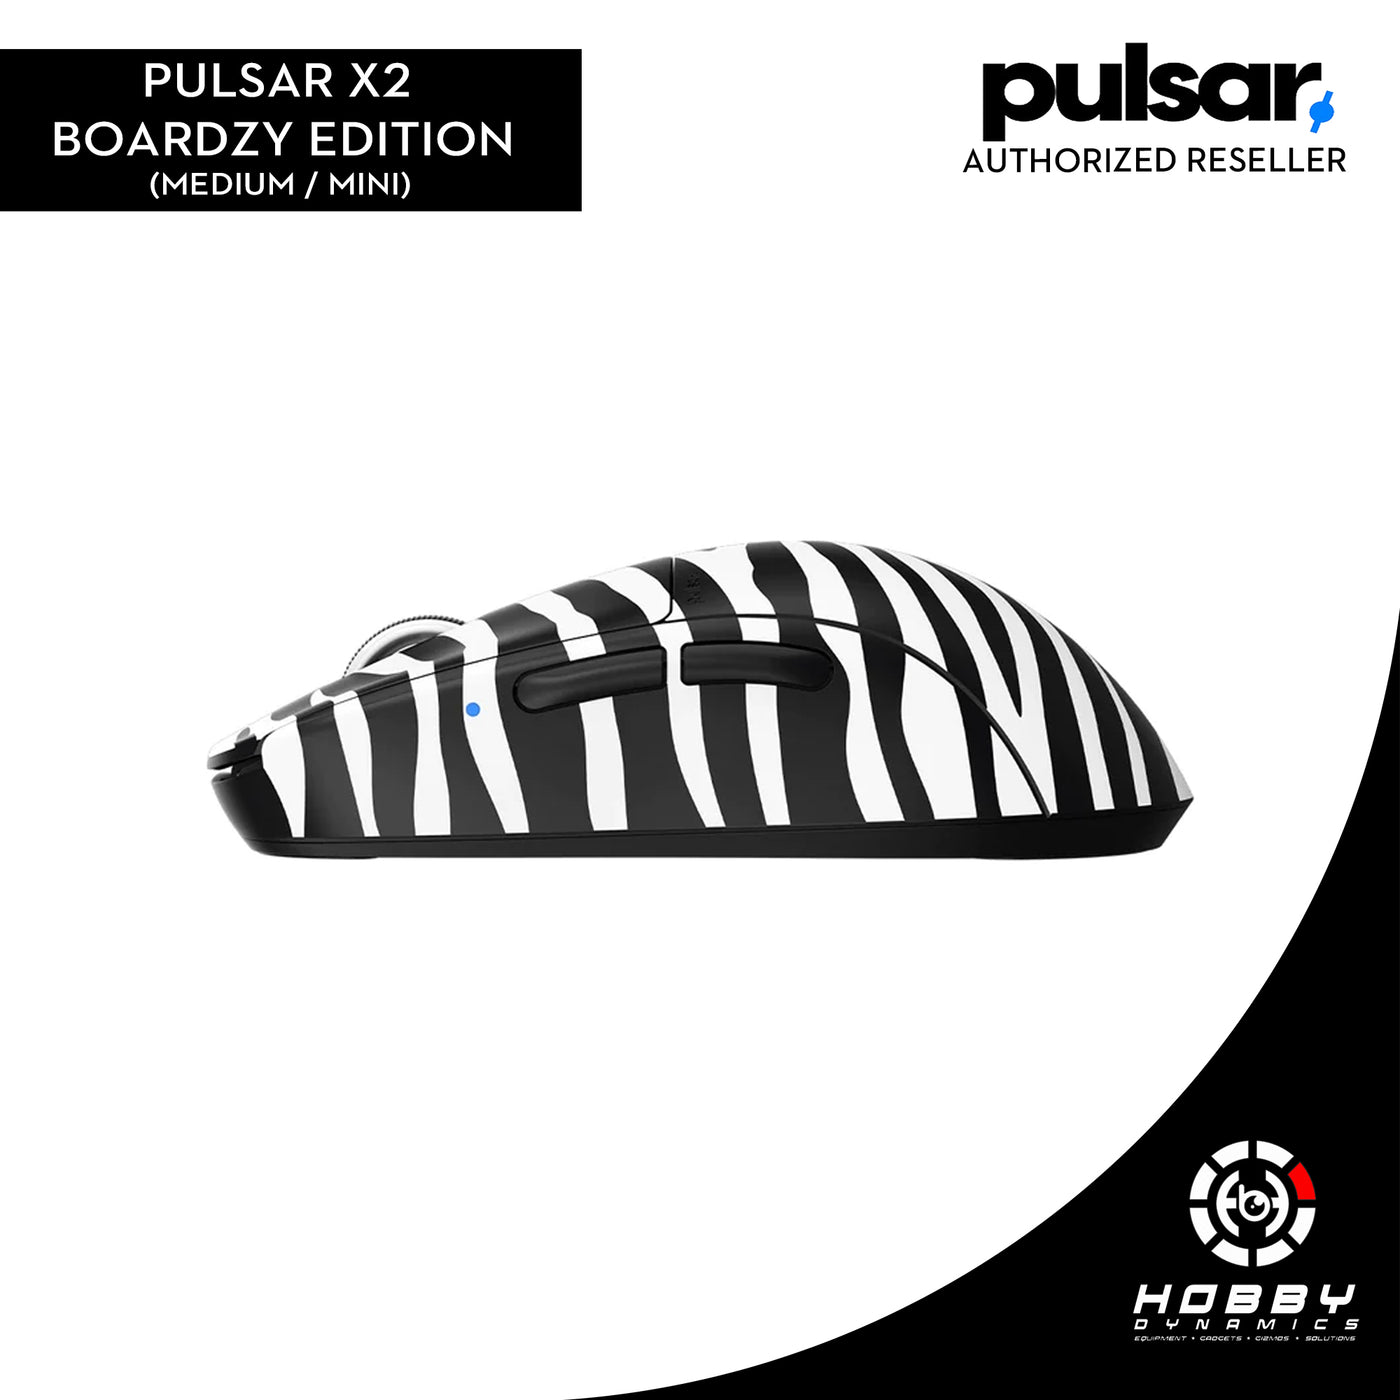 Pulsar X2 Gaming Mouse [Boardzy Edition]  (Medium / Mini)